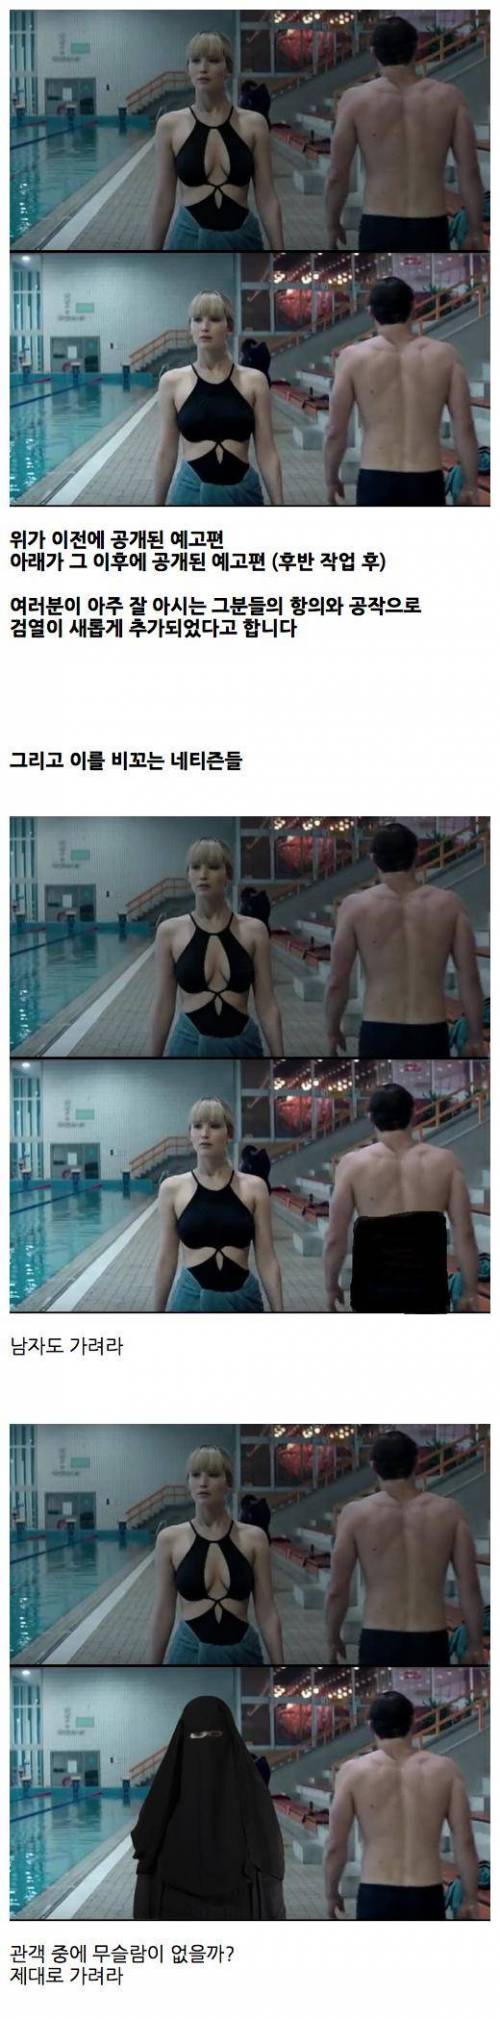 영화 '레드 스패로' 검열 논란.jpg